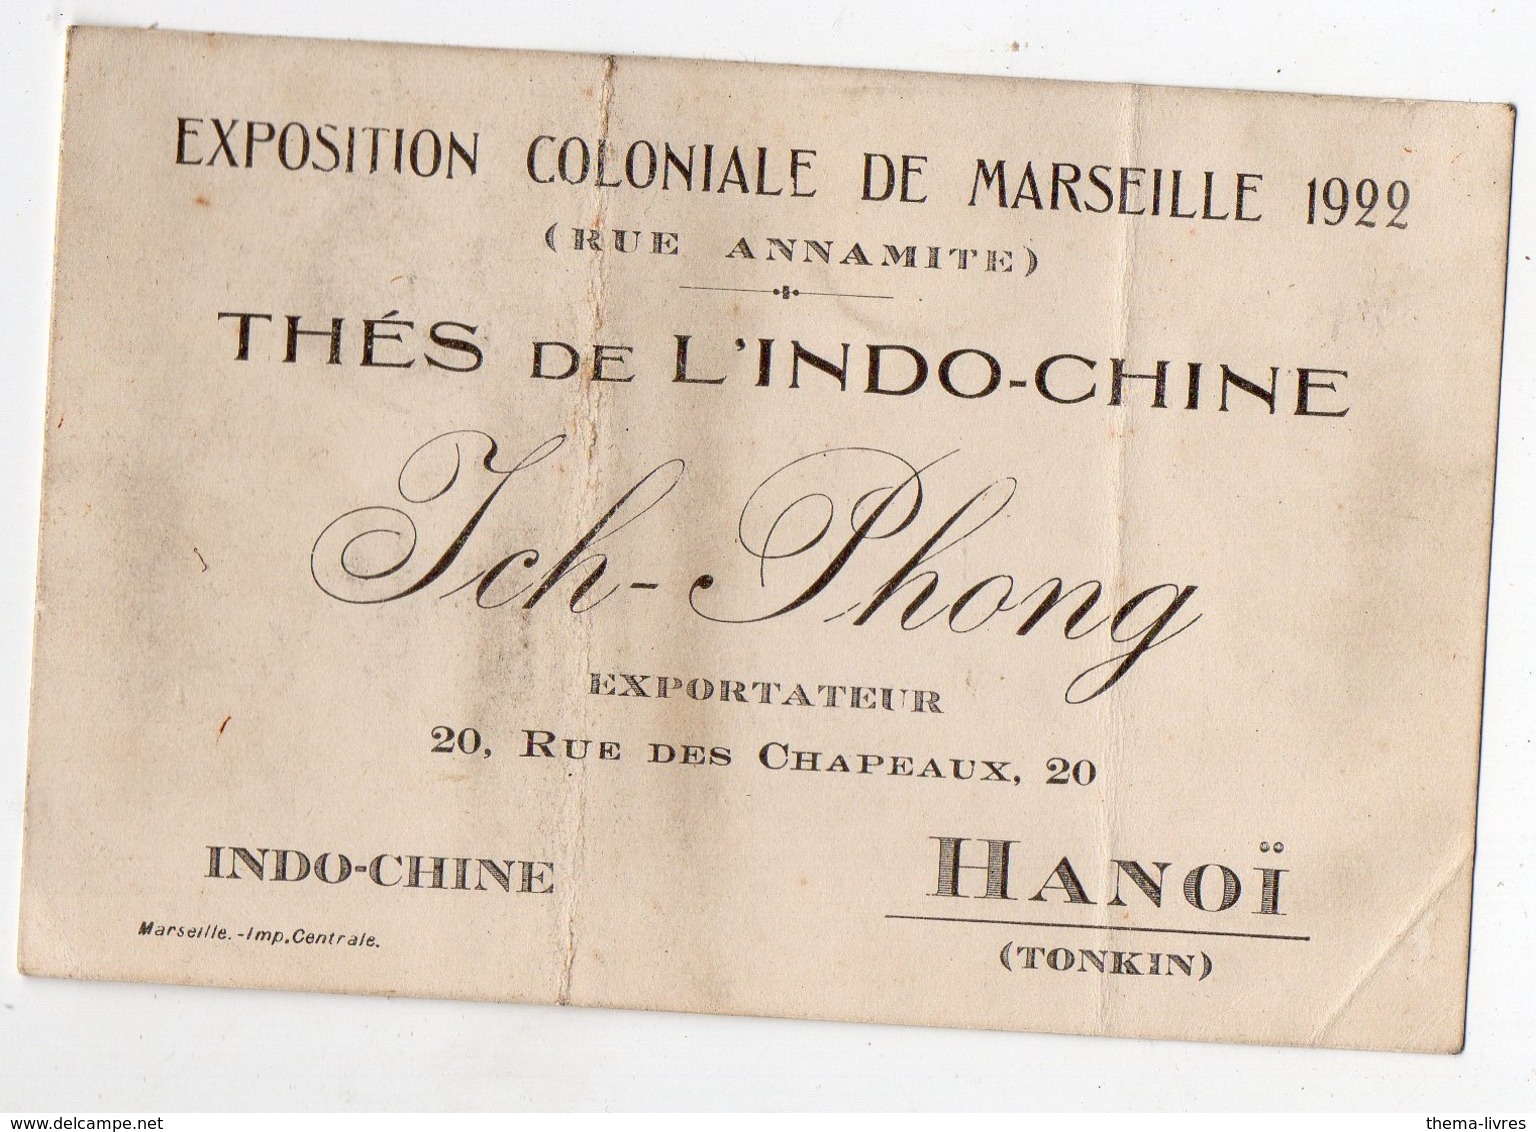 Hanoï (Tonkin)  Carte THE DE L'INDOCHINE  Ich-Phong   (EXPO COLONIALE MARSEILLE 1922) (PPP16981) - Publicités